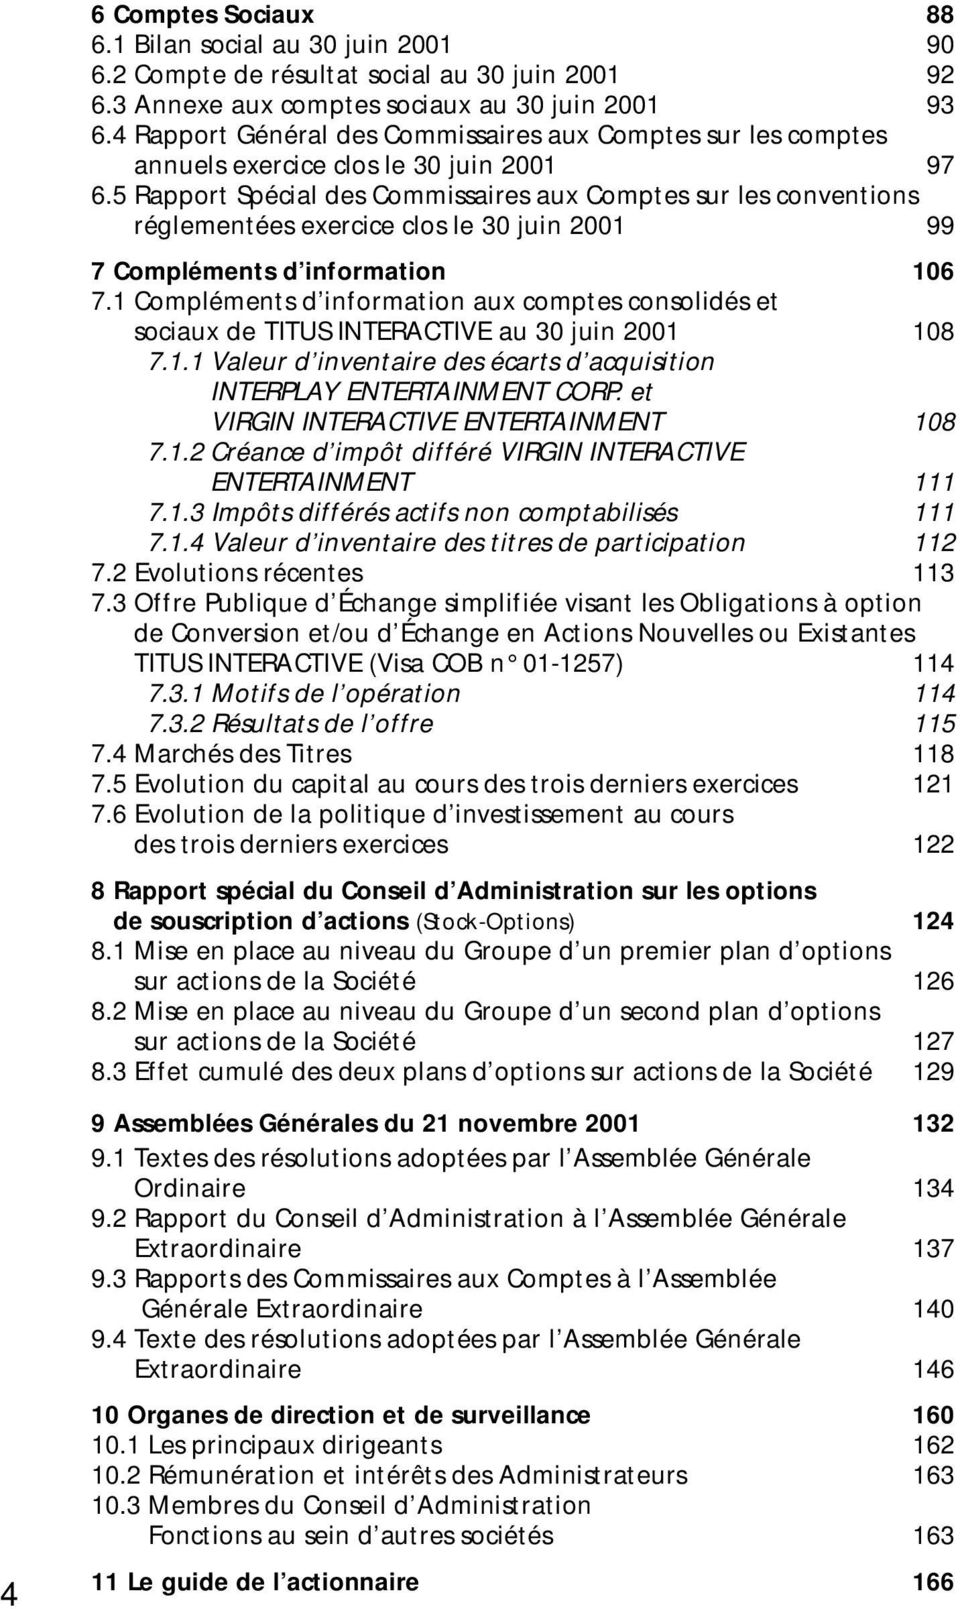 5 Rapport Spécial des Commissaires aux Comptes sur les conventions réglementées exercice clos le 30 juin 2001 99 7 Compléments d information 106 7.